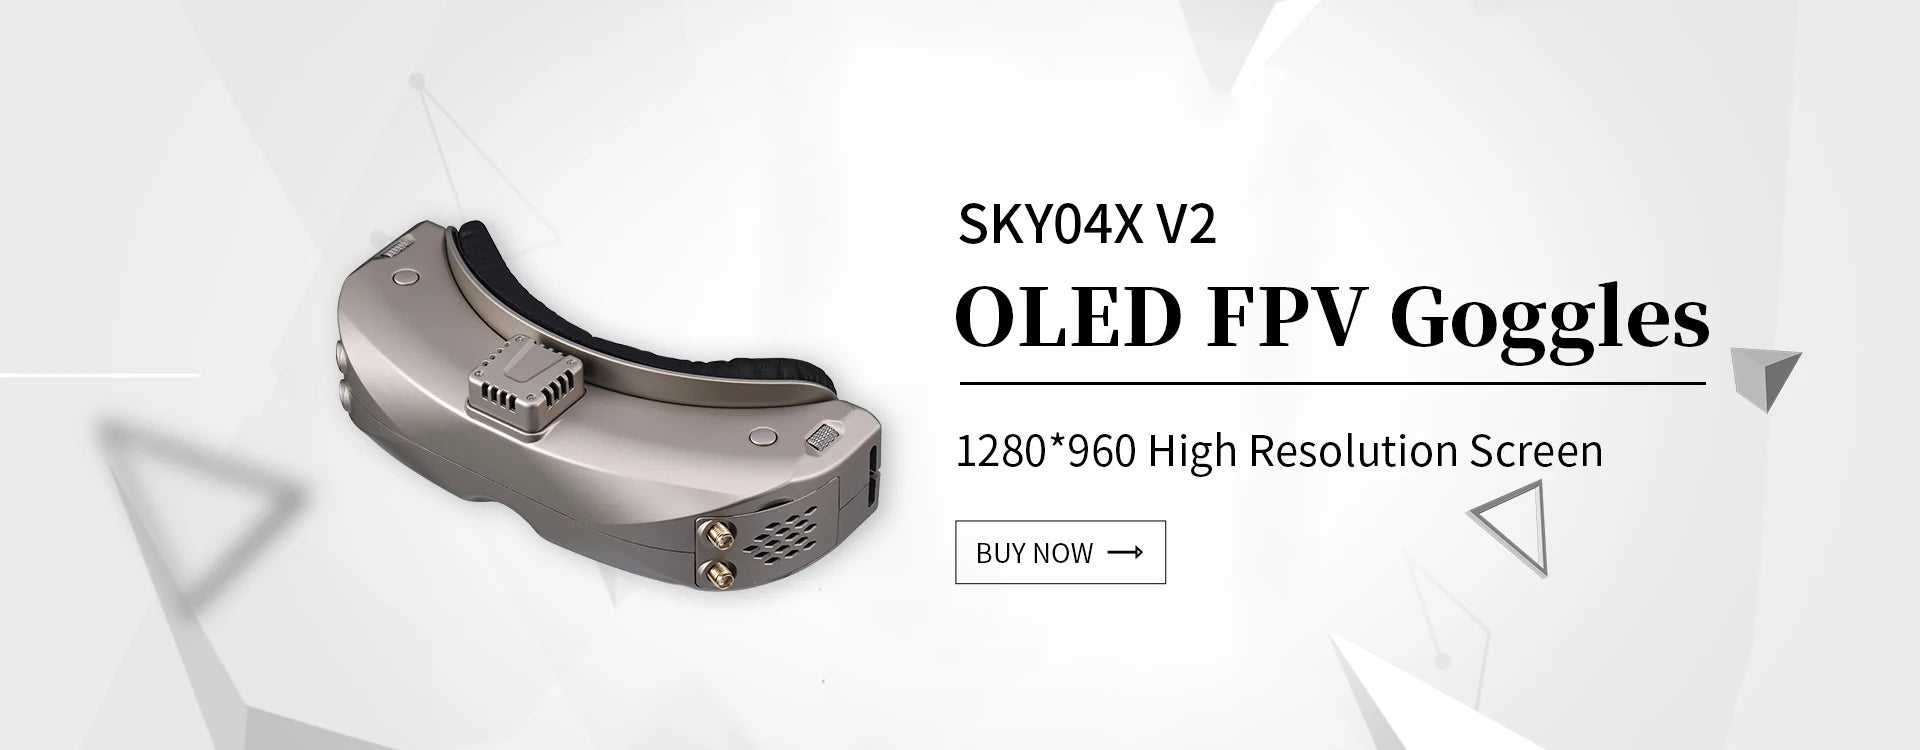 SKYO4X V2 OLED FPV Goggles 1280*